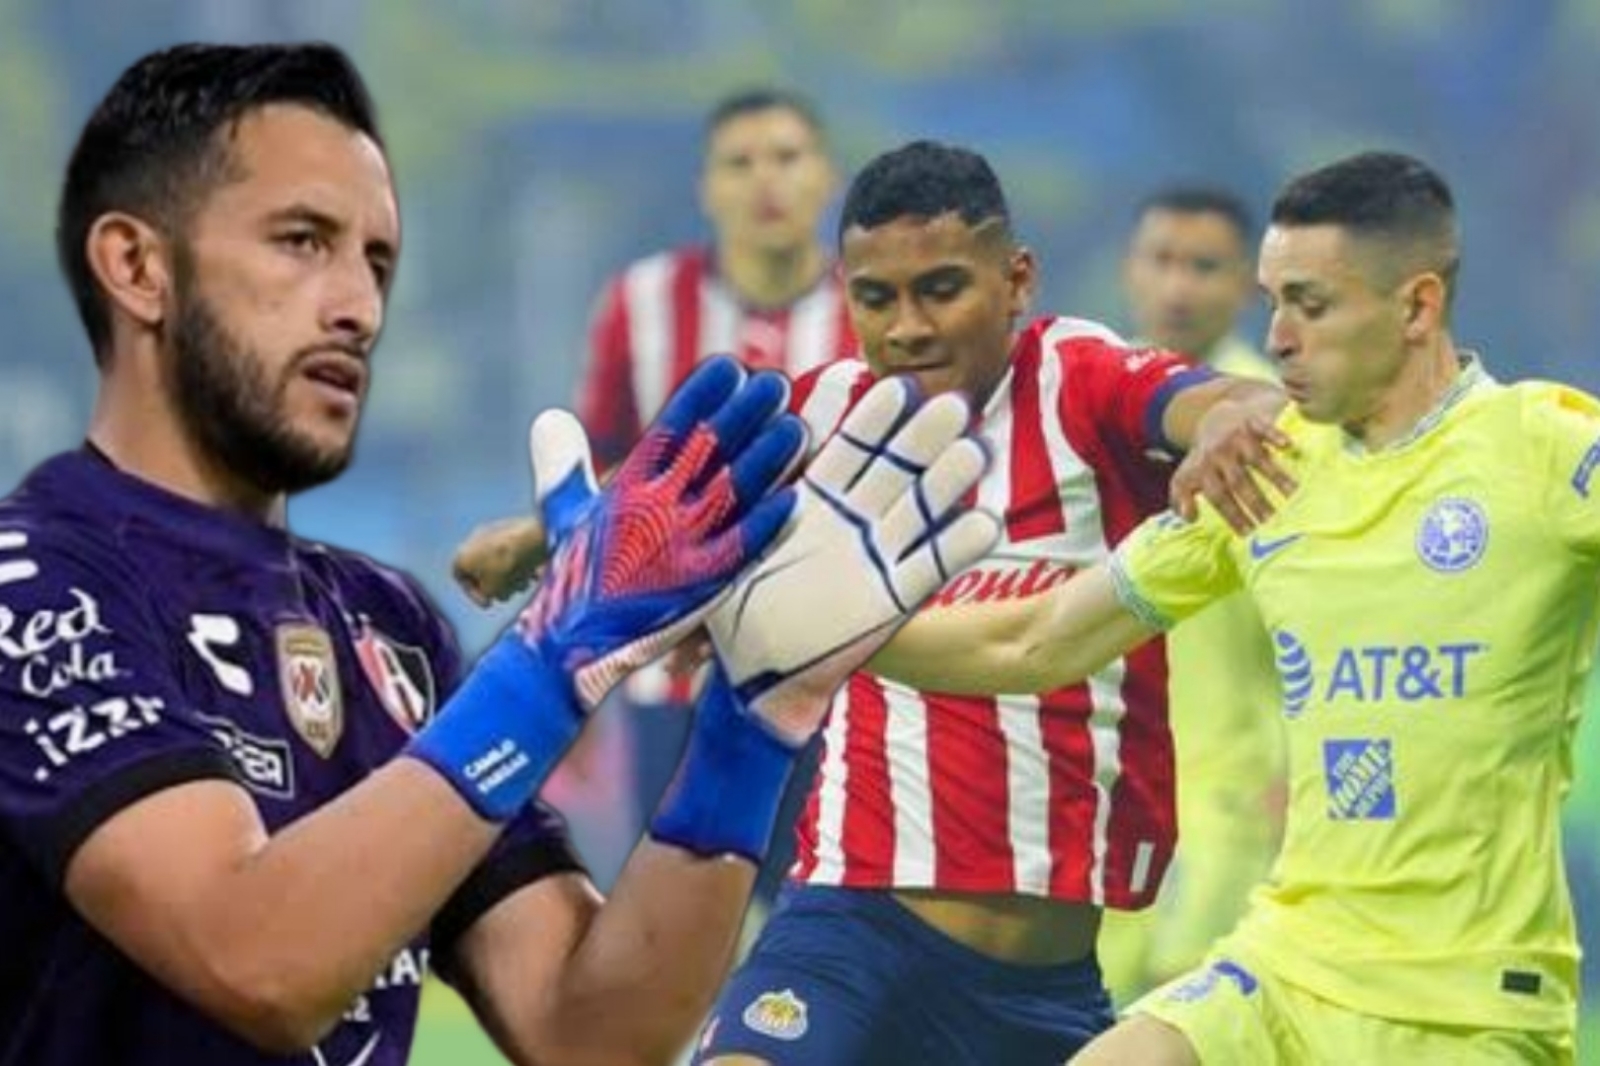 Alejandro Zendejas juega ante Cruz Azul con máscara protectora